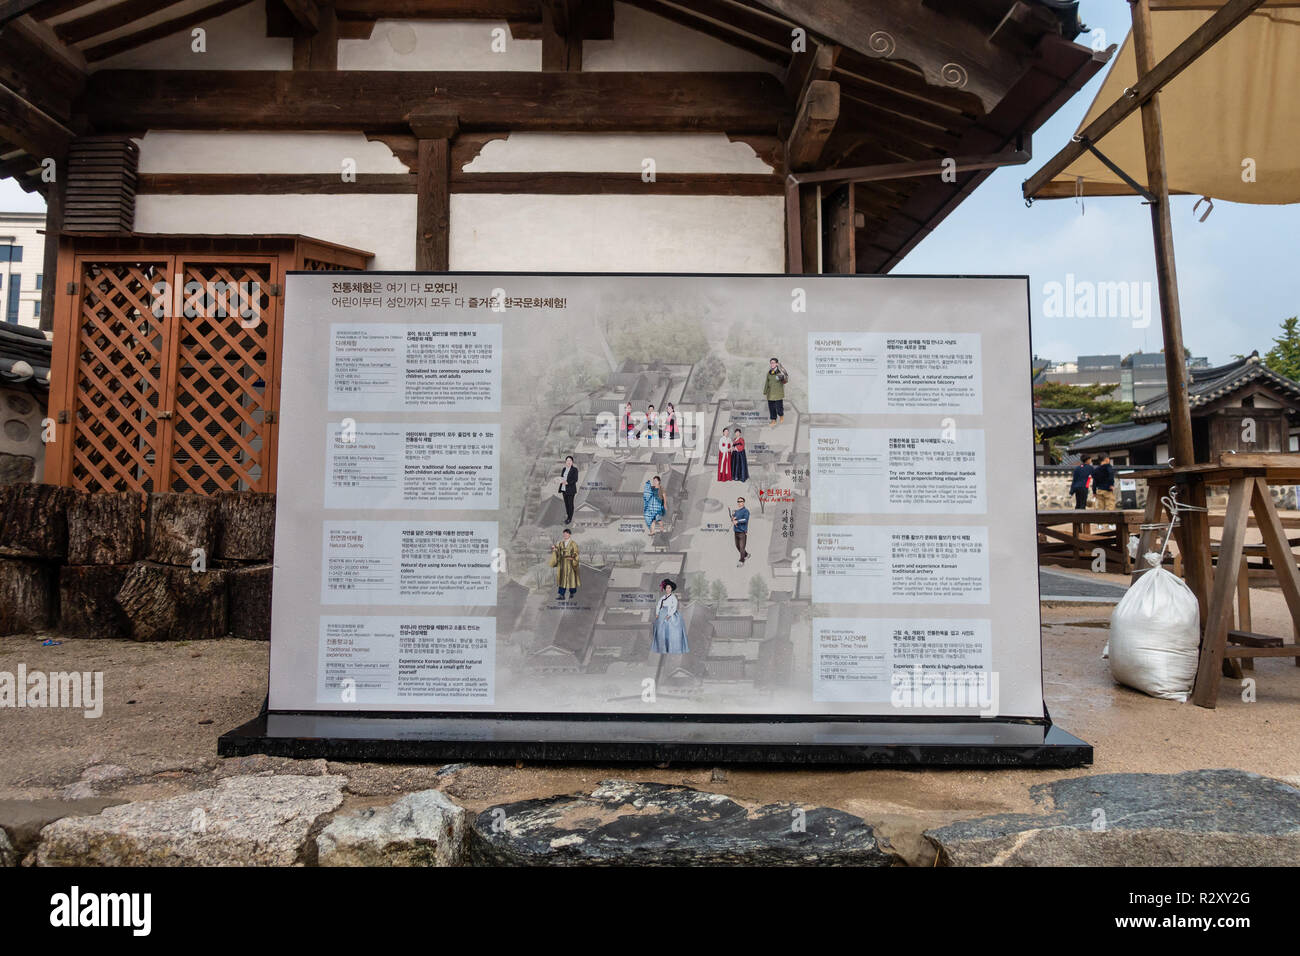 Una scheda di informazioni a Namsangol Villaggio Hanok, Seoul, Corea del Sud con i dettagli delle attività che possono essere eseguite sul sito. Foto Stock